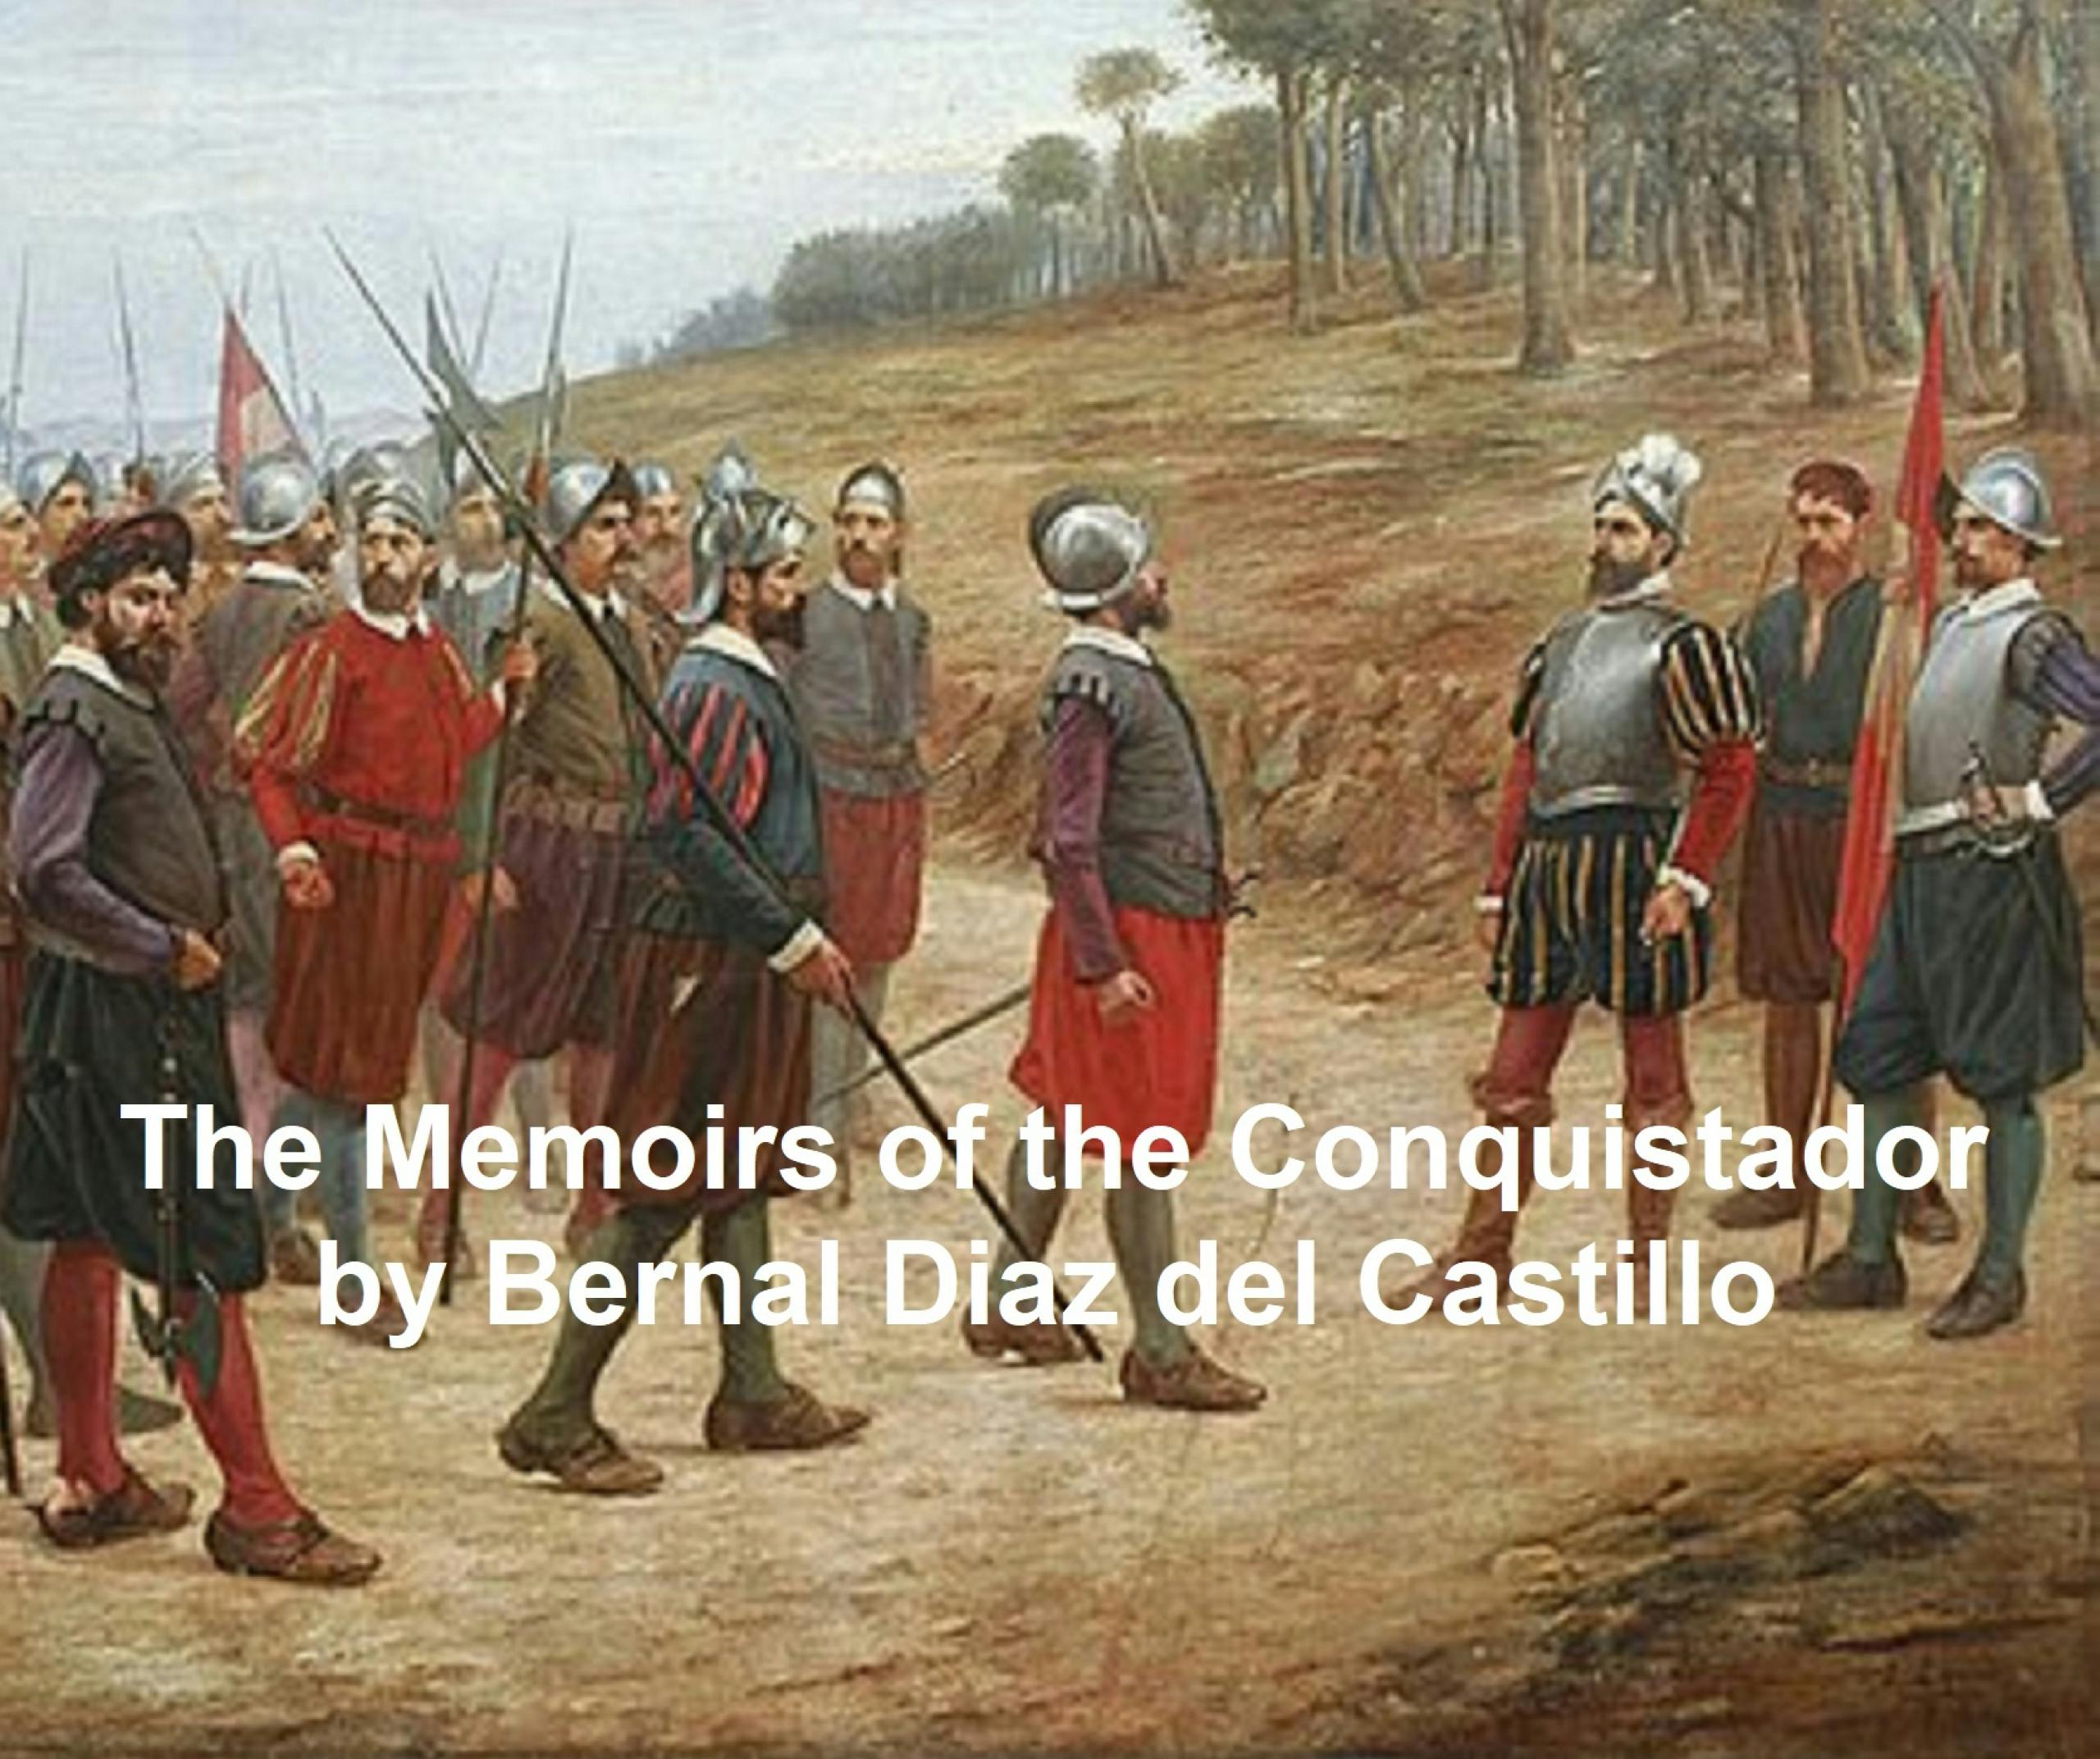 The Memoirs of the Conquistador - Bernal Diaz del Castillo